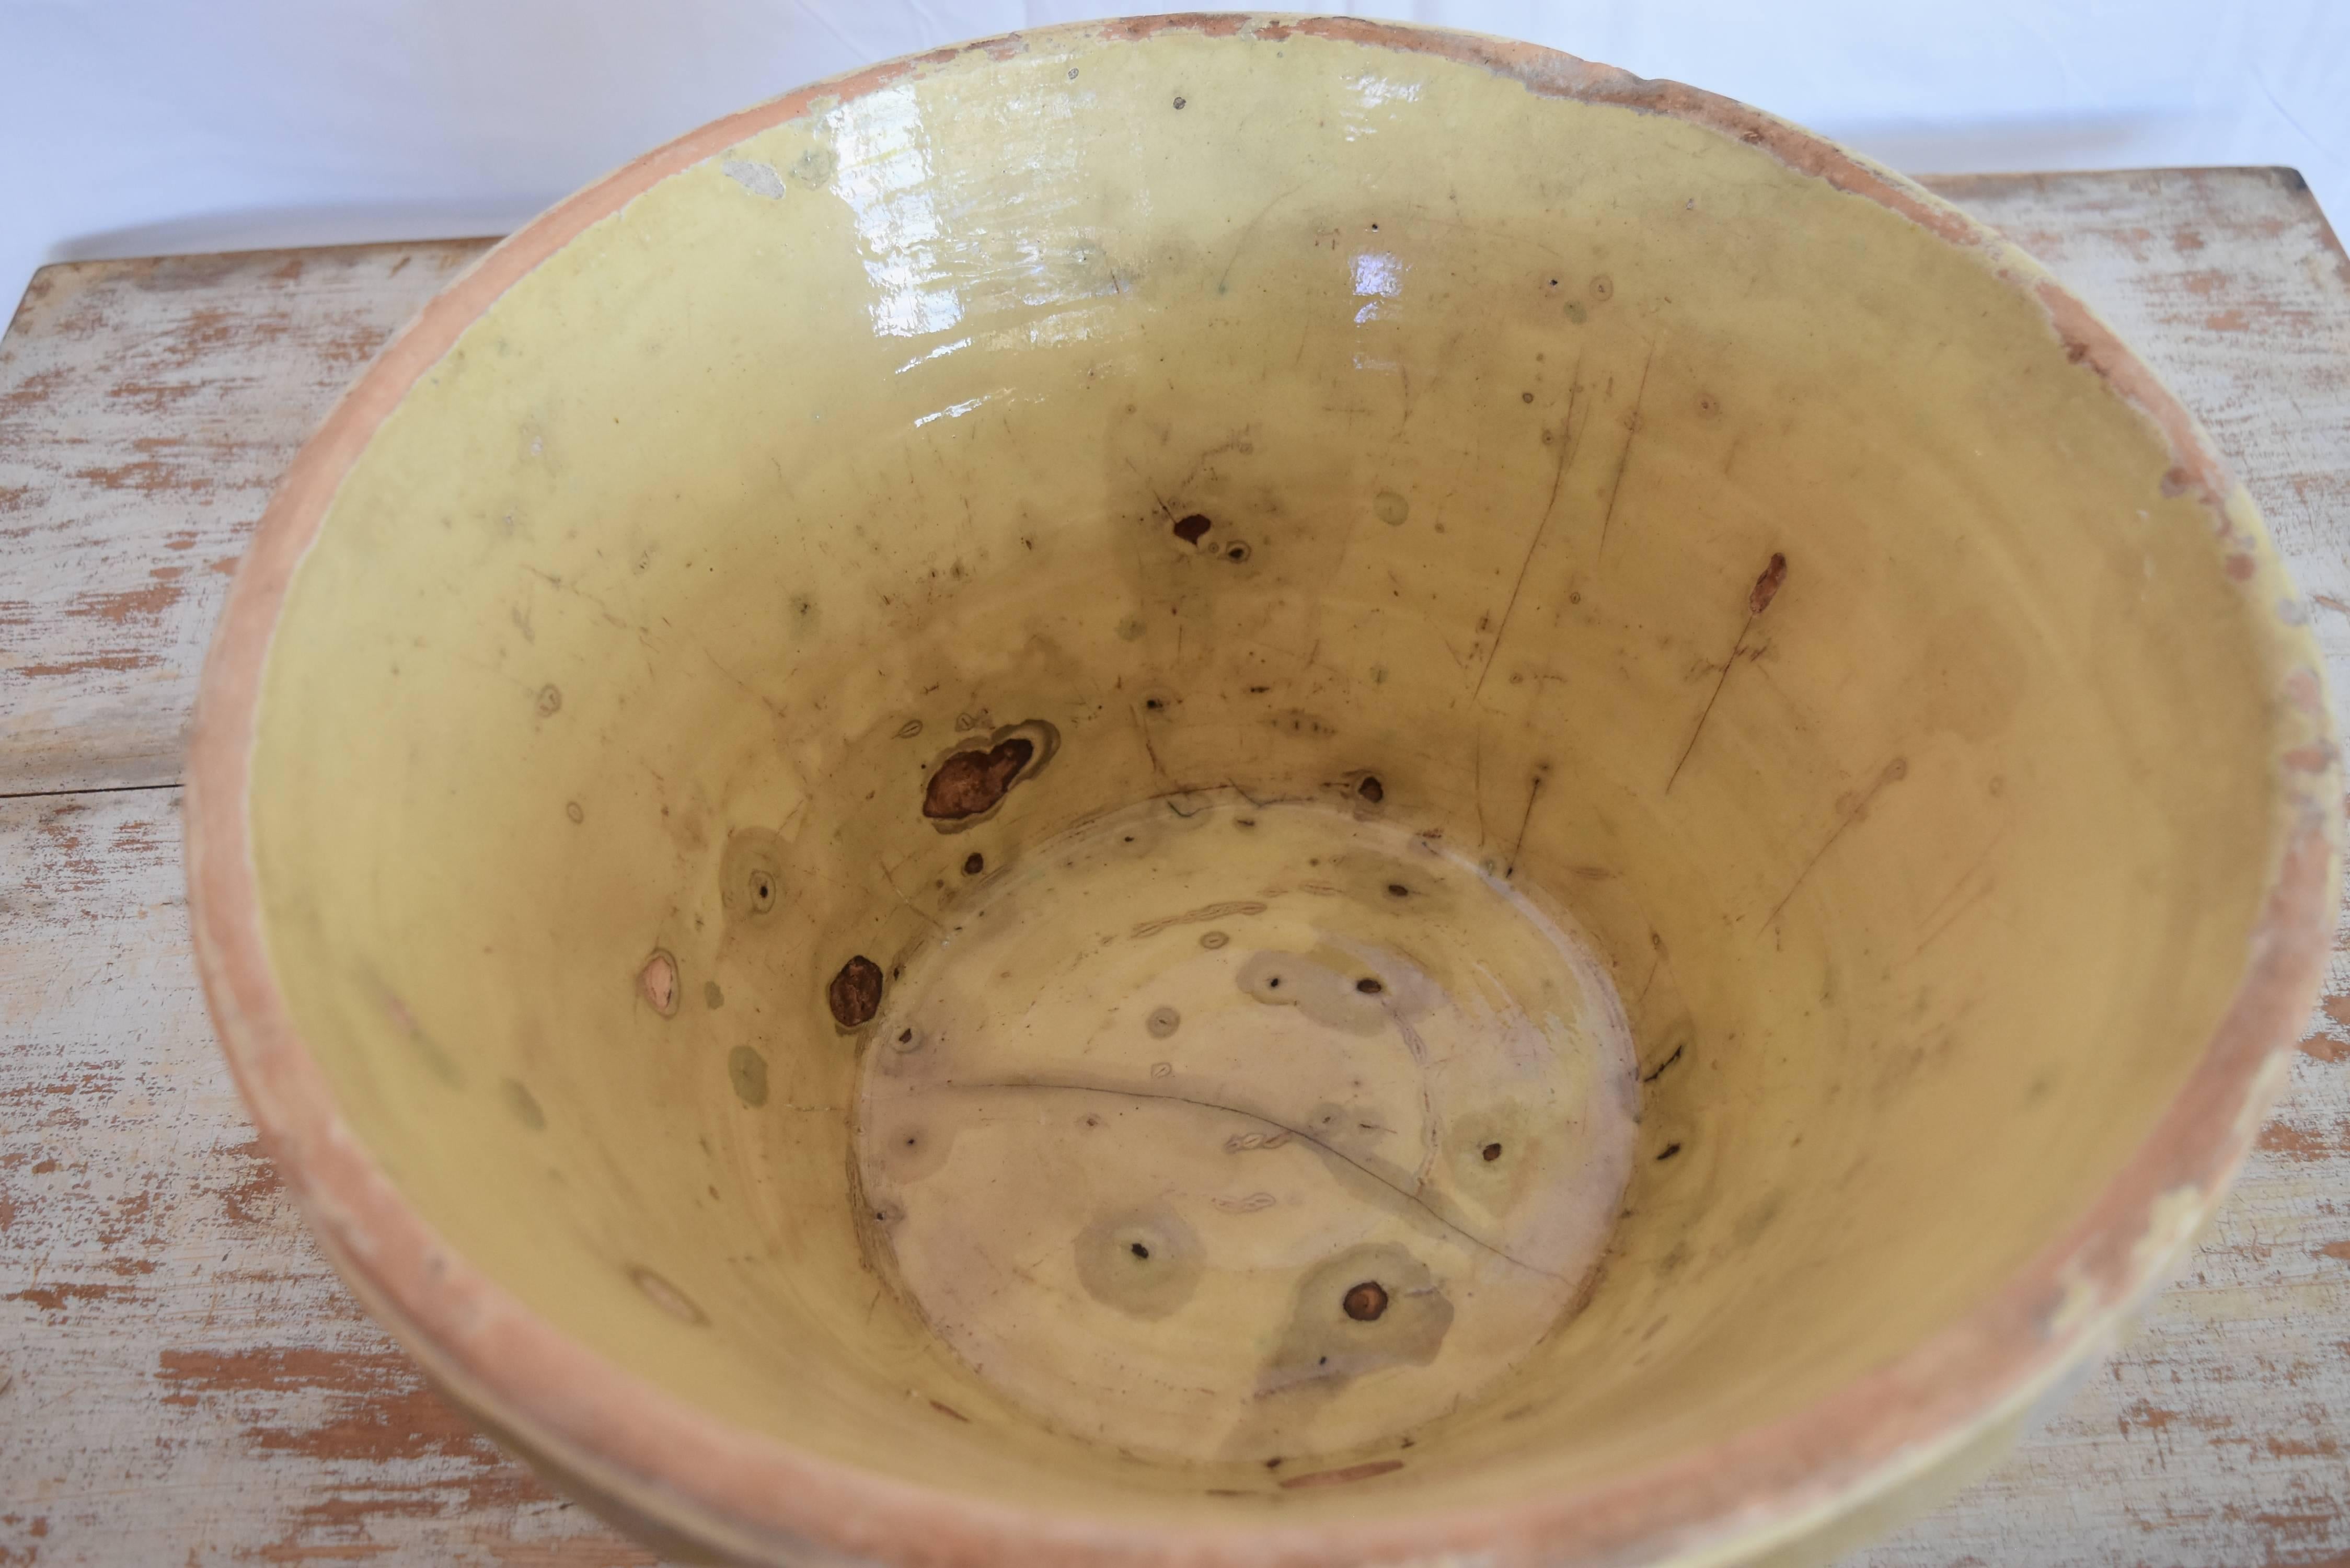 glazed terracotta bowl